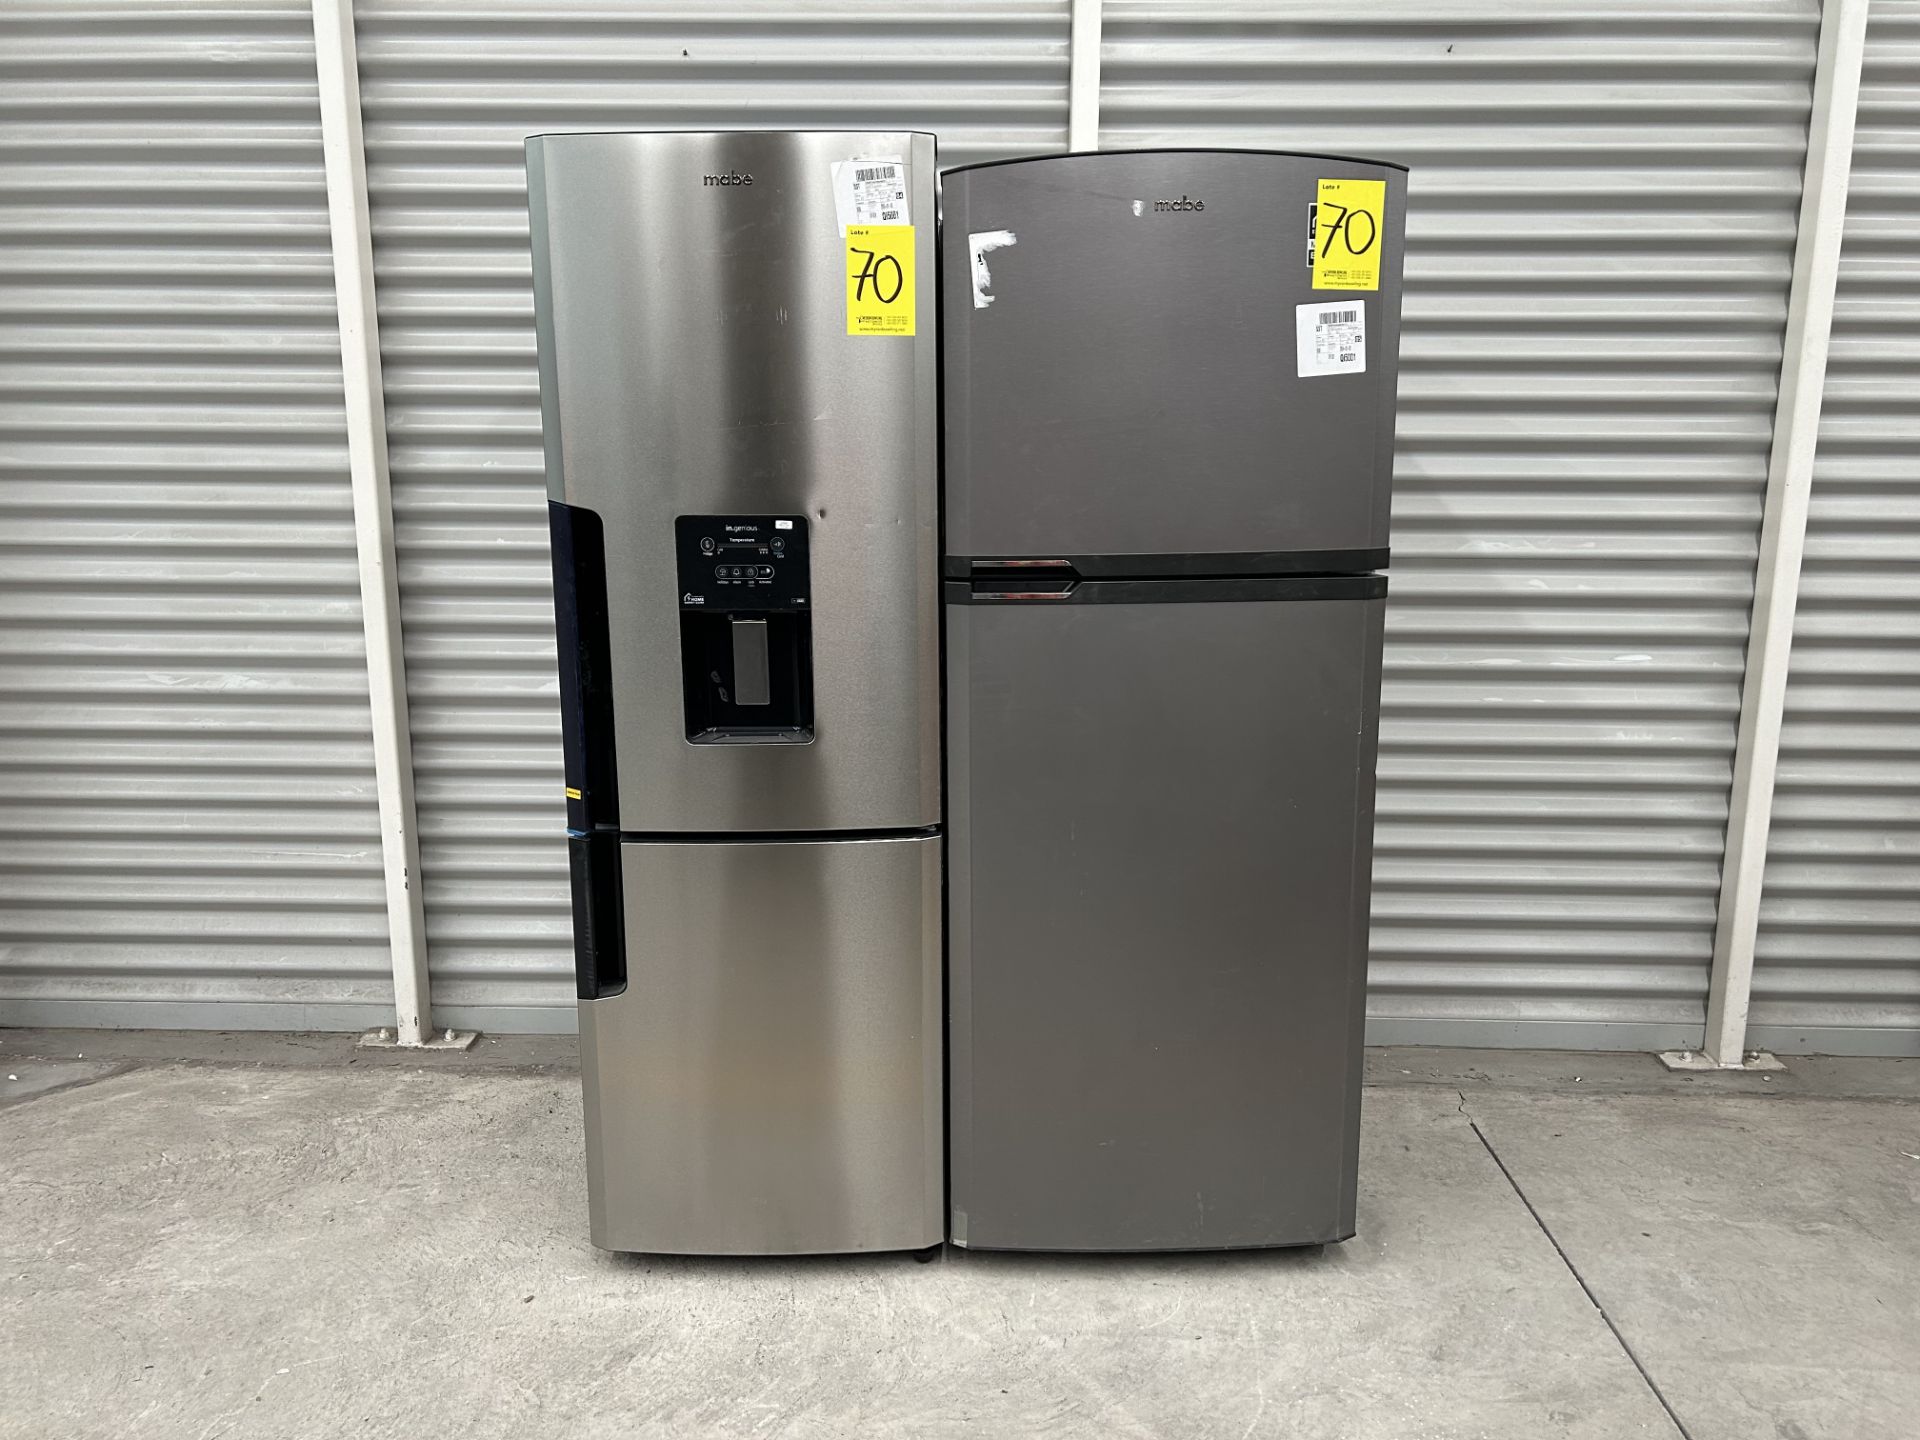 Lote de 2 refrigeradores contiene: 1 Refrigerador con dispensador de agua Marca MABE, Modelo RMB300